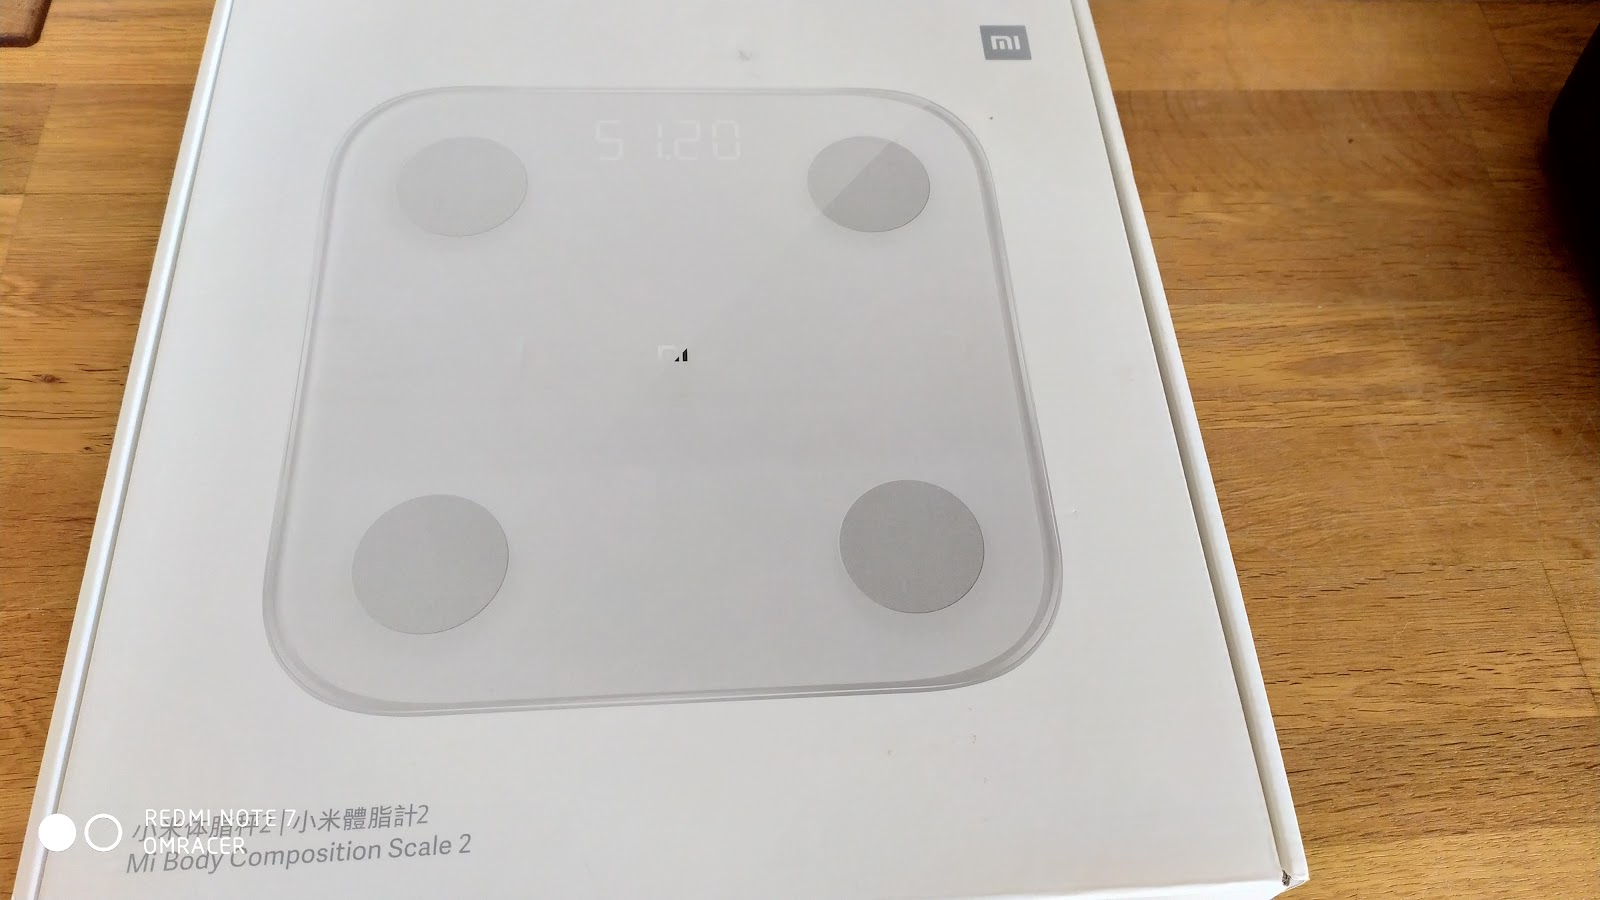 Muchos Sano toda la vida omracer Reviews: Xiaomi Mi Body Composition Scale 2